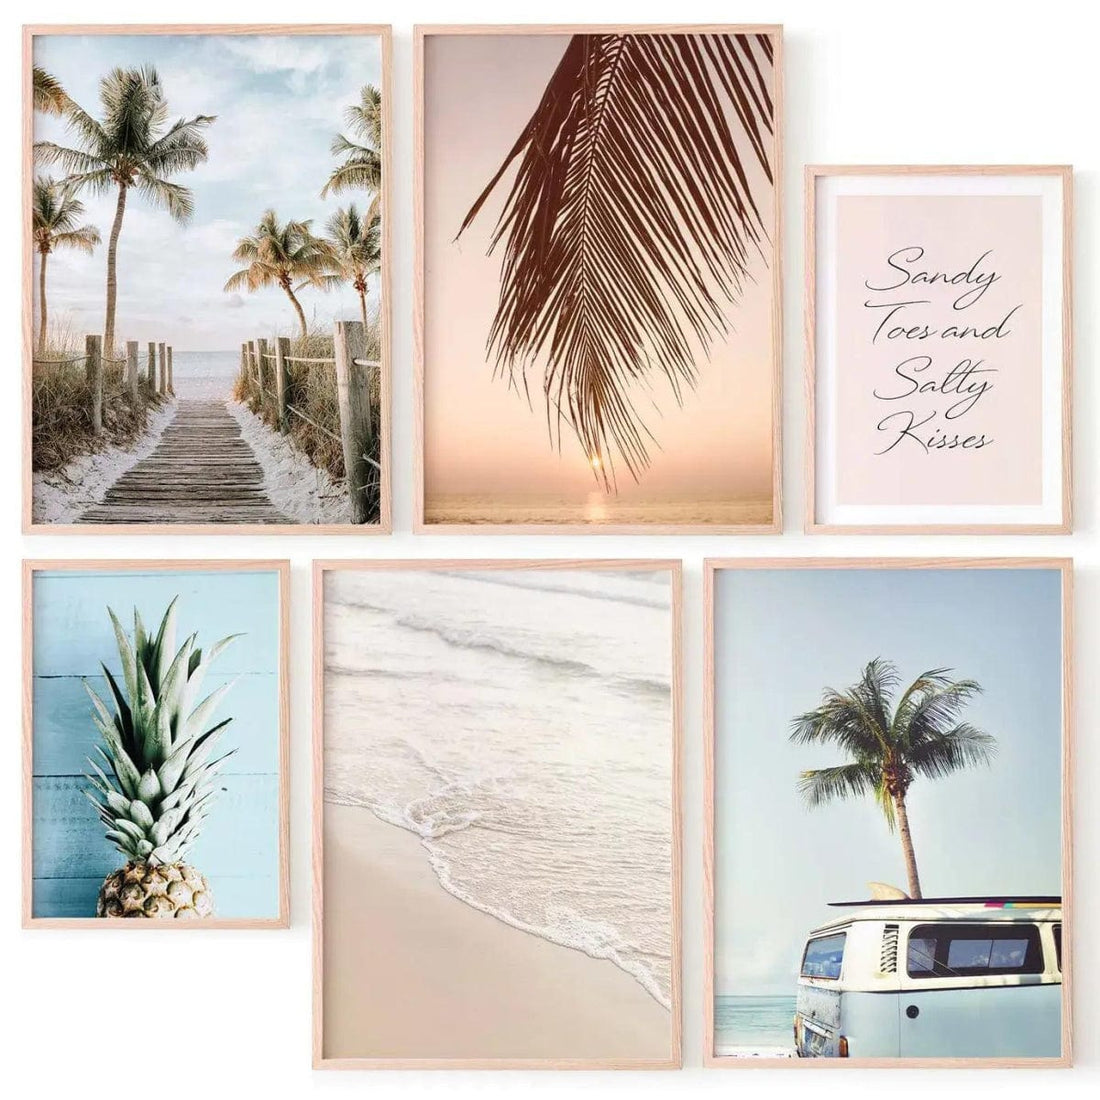 Juego de 6 láminas decorativas de fotografías con playa, palmeras y frase motivadora &quot;Pies de arena y Besos salados&quot;